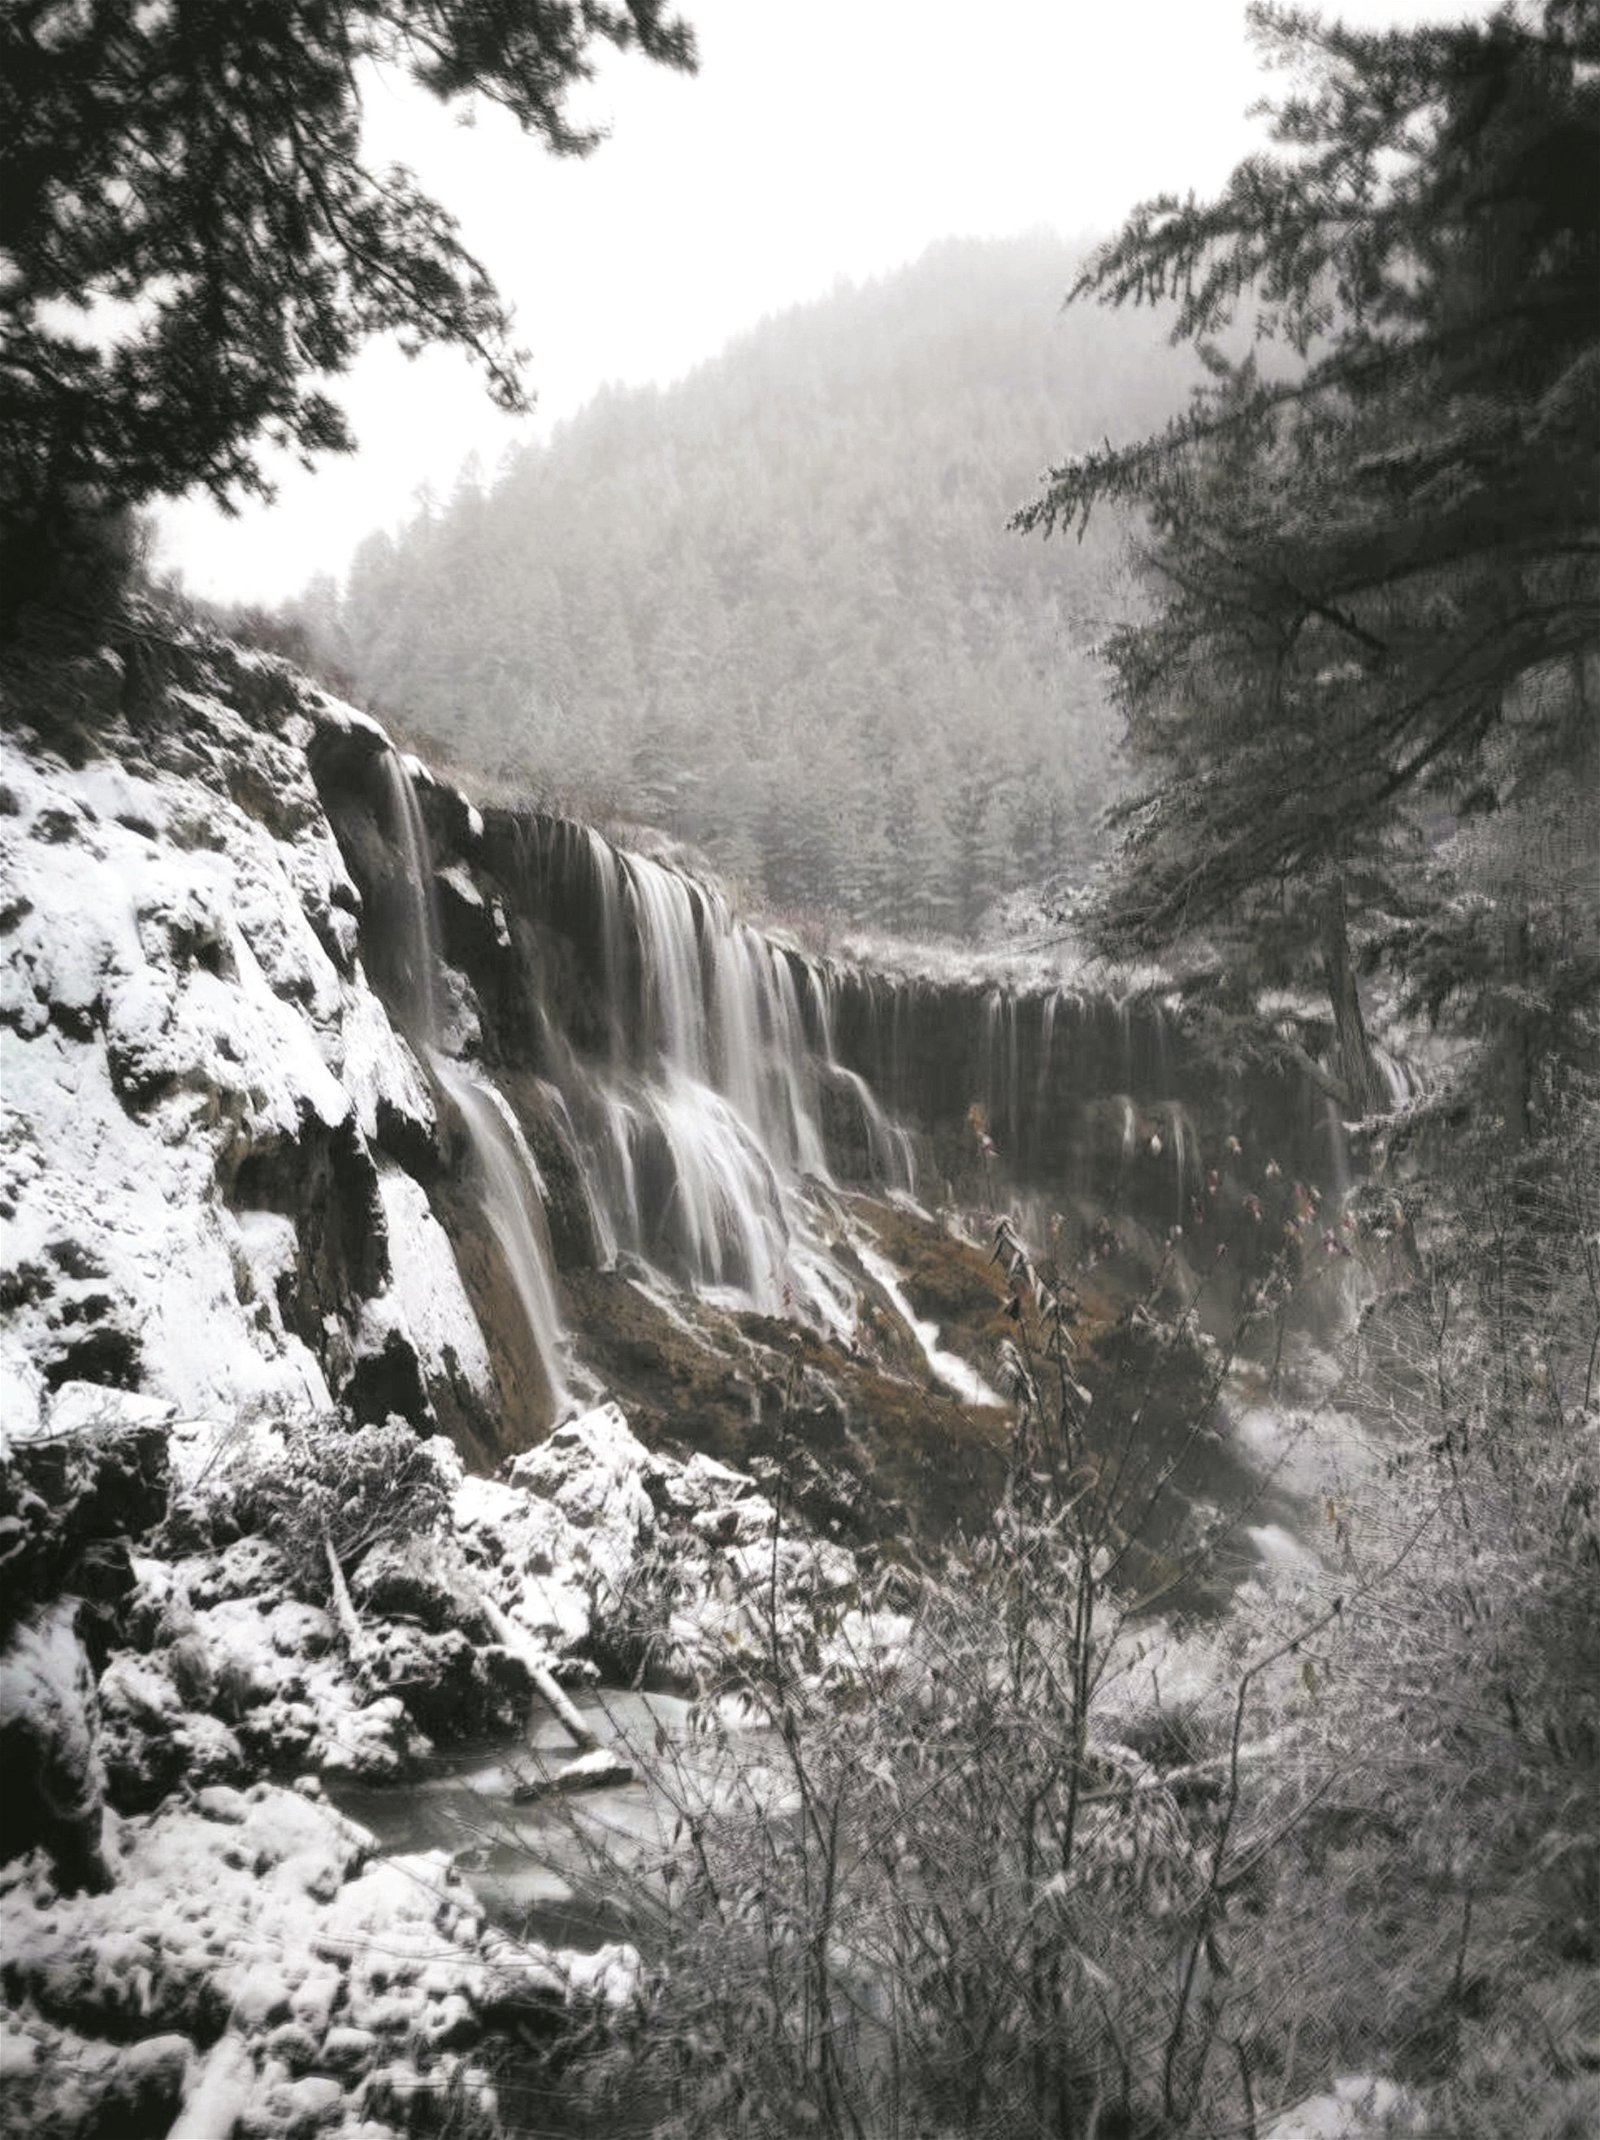 冬天里诺日朗瀑布难抵严寒被冰封，沟里变成白茫茫的一片。地震发生后该瀑布多处坍塌，目前已恢复到原先的美丽。